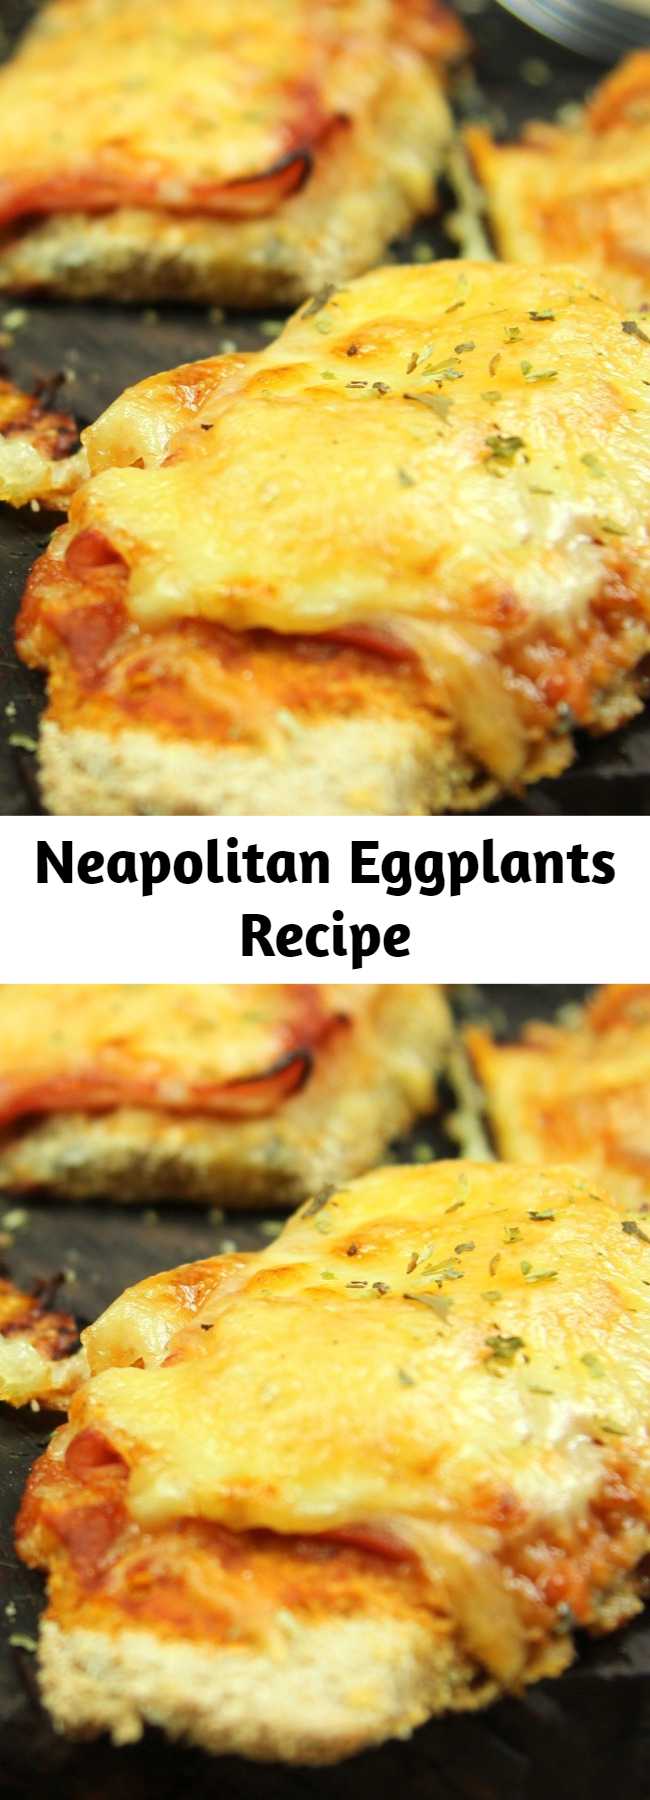 Neapolitan Eggplants Recipe